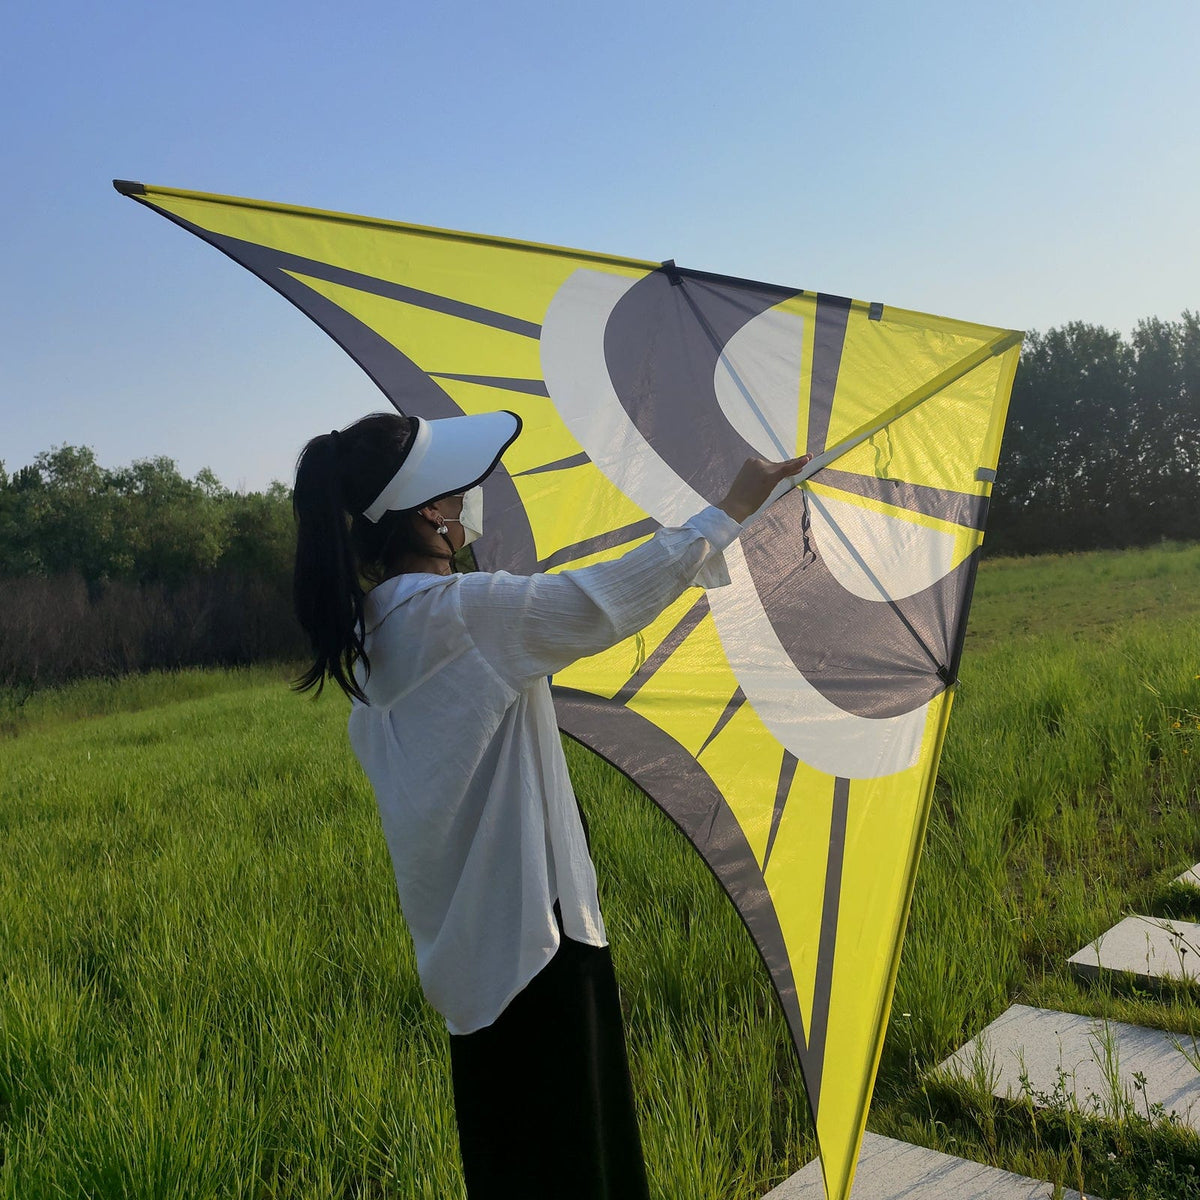 Giant Kite for Adults Easy to Fly, 9ft Huge Delta Kite-Flying Hoofer